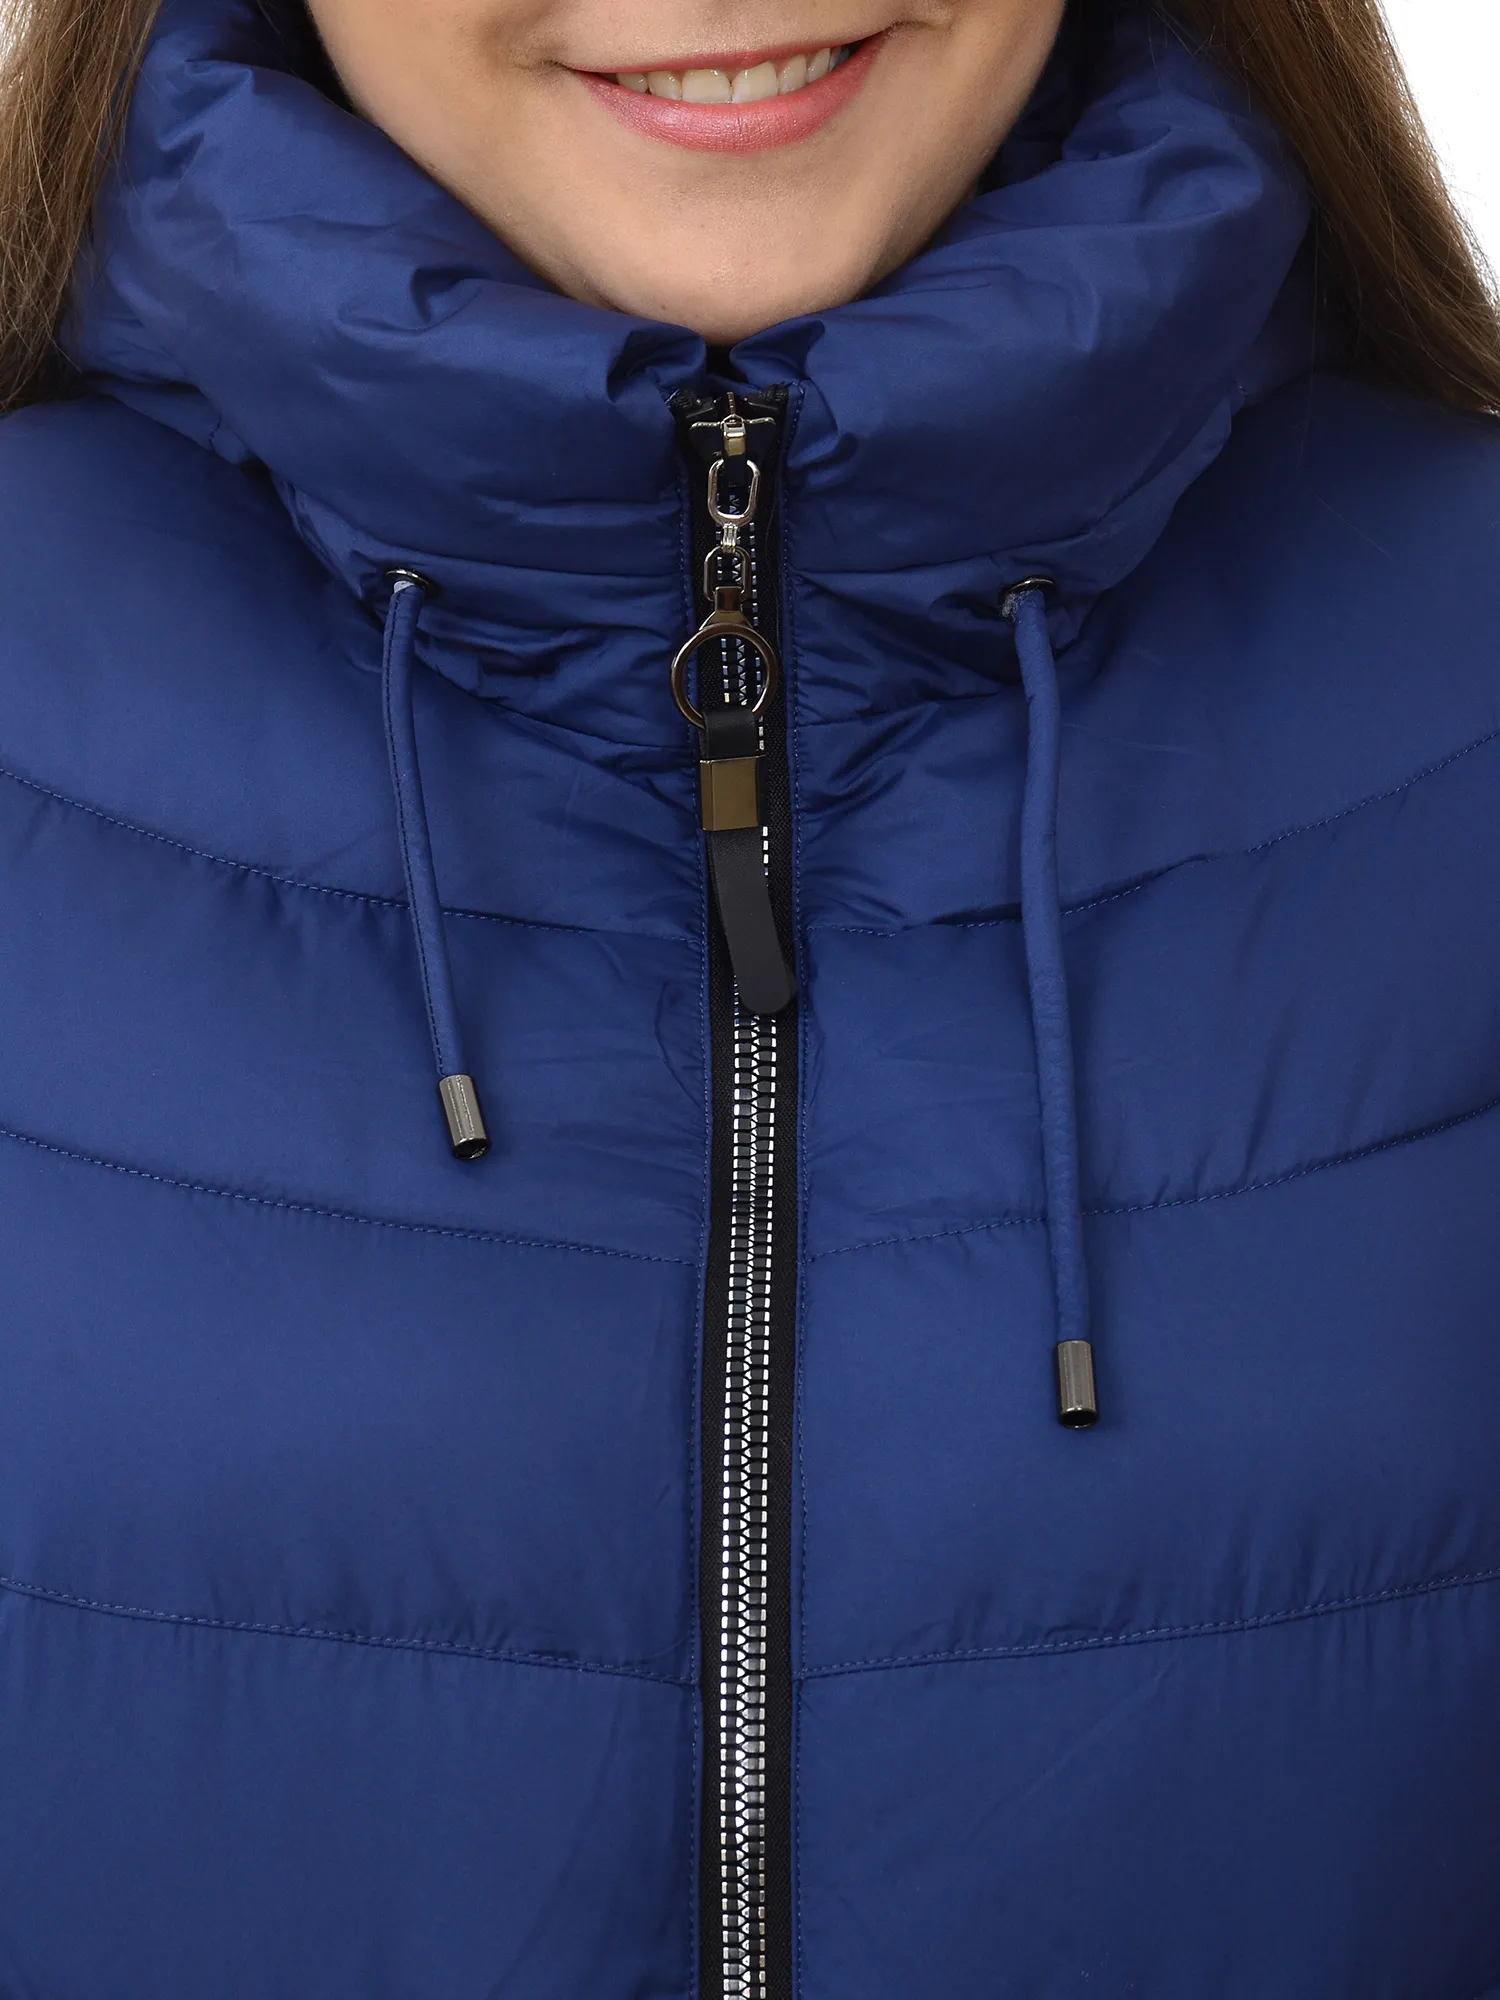 Пальто женское зимнее большого размера